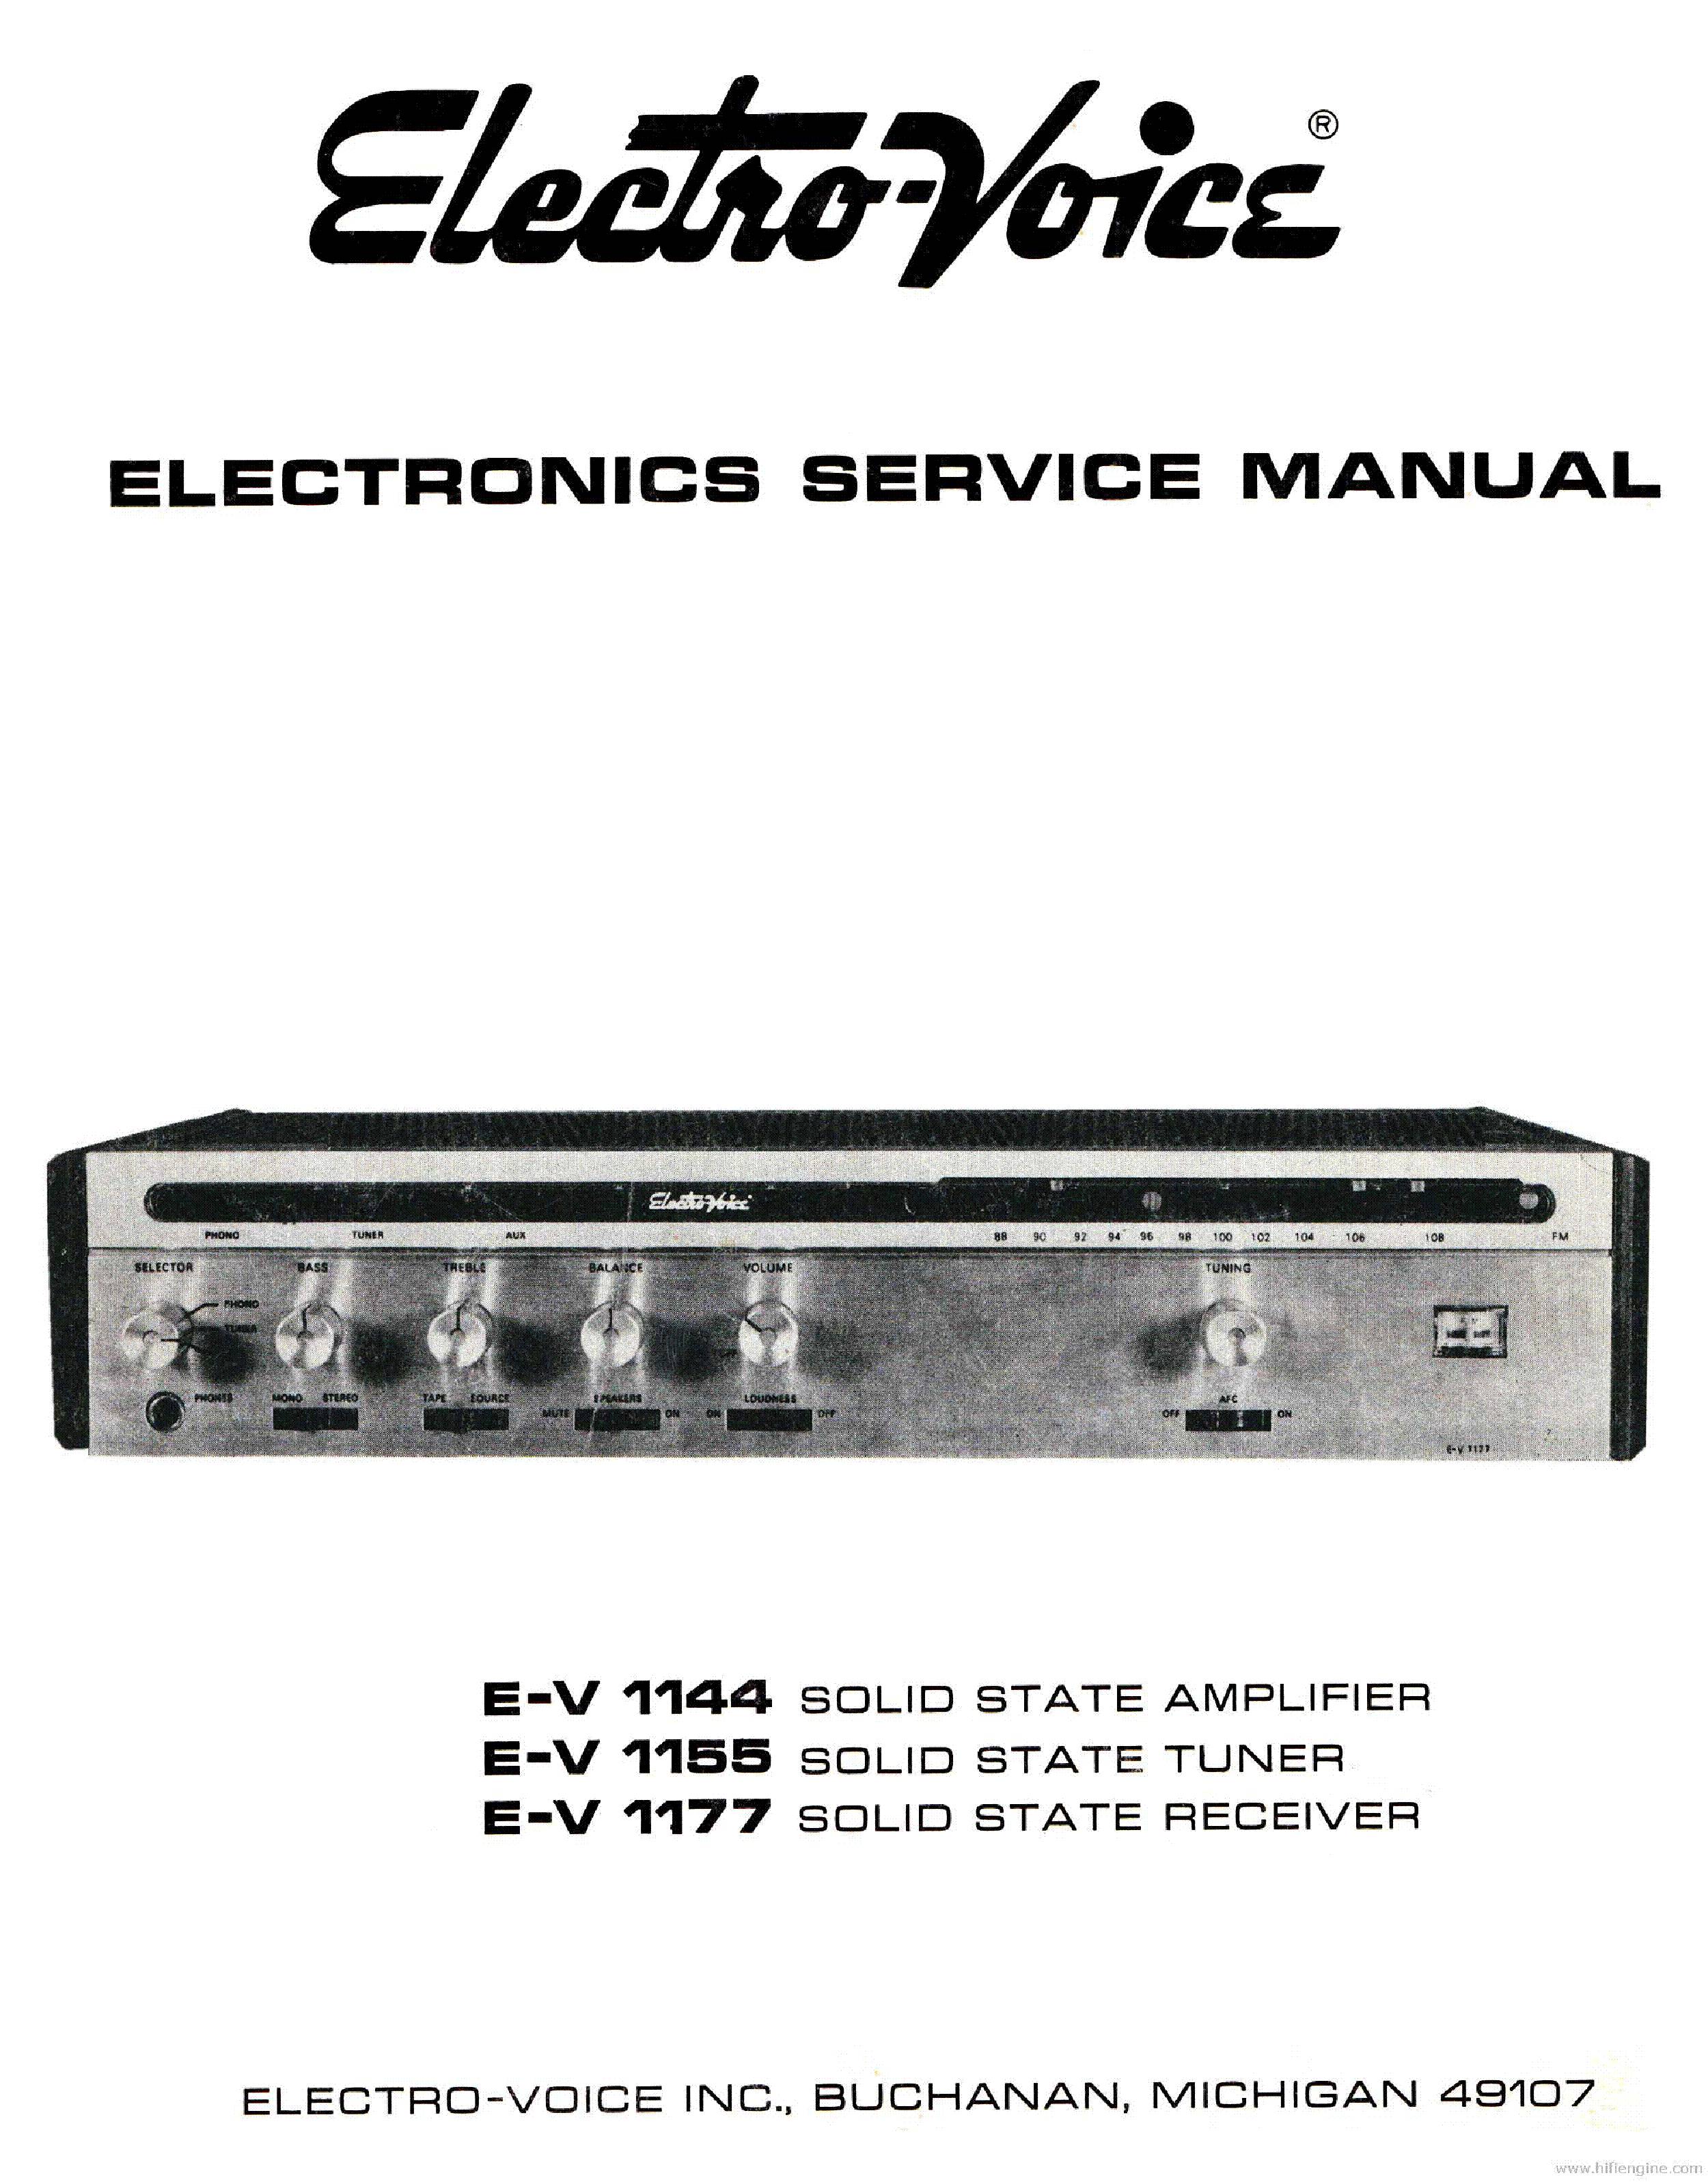 Electro-Voice E-V 1155